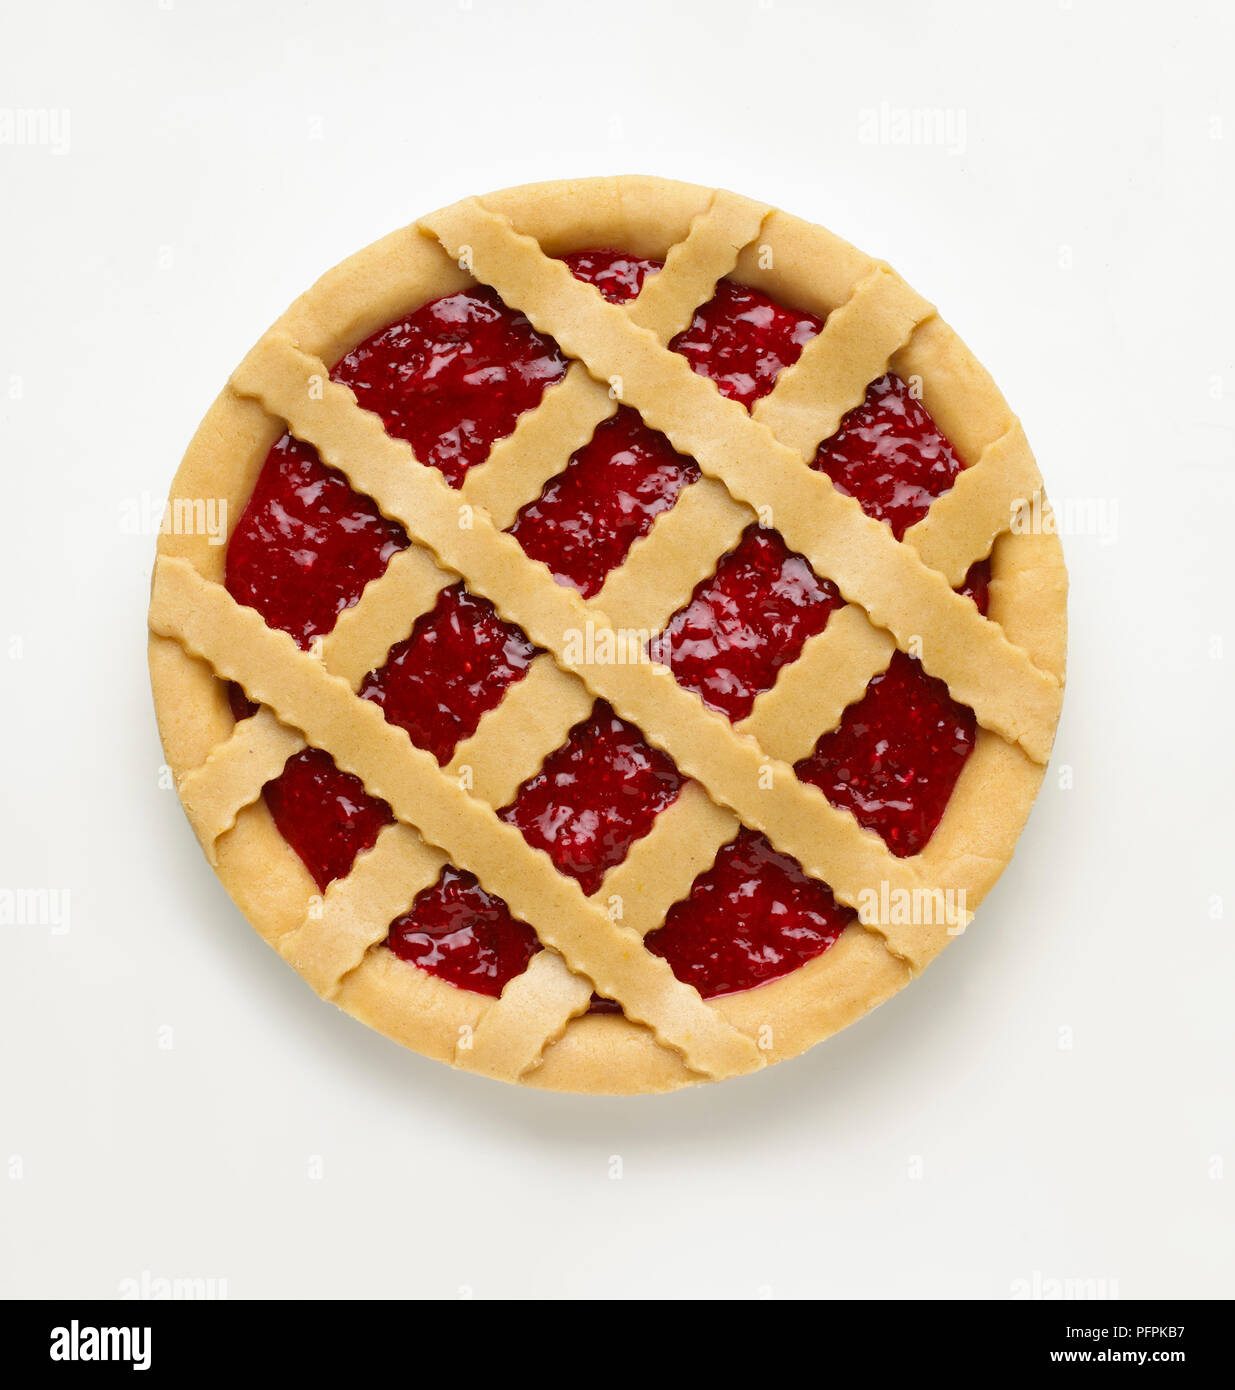 Raspberry tart with pastry lattice Stock Photo